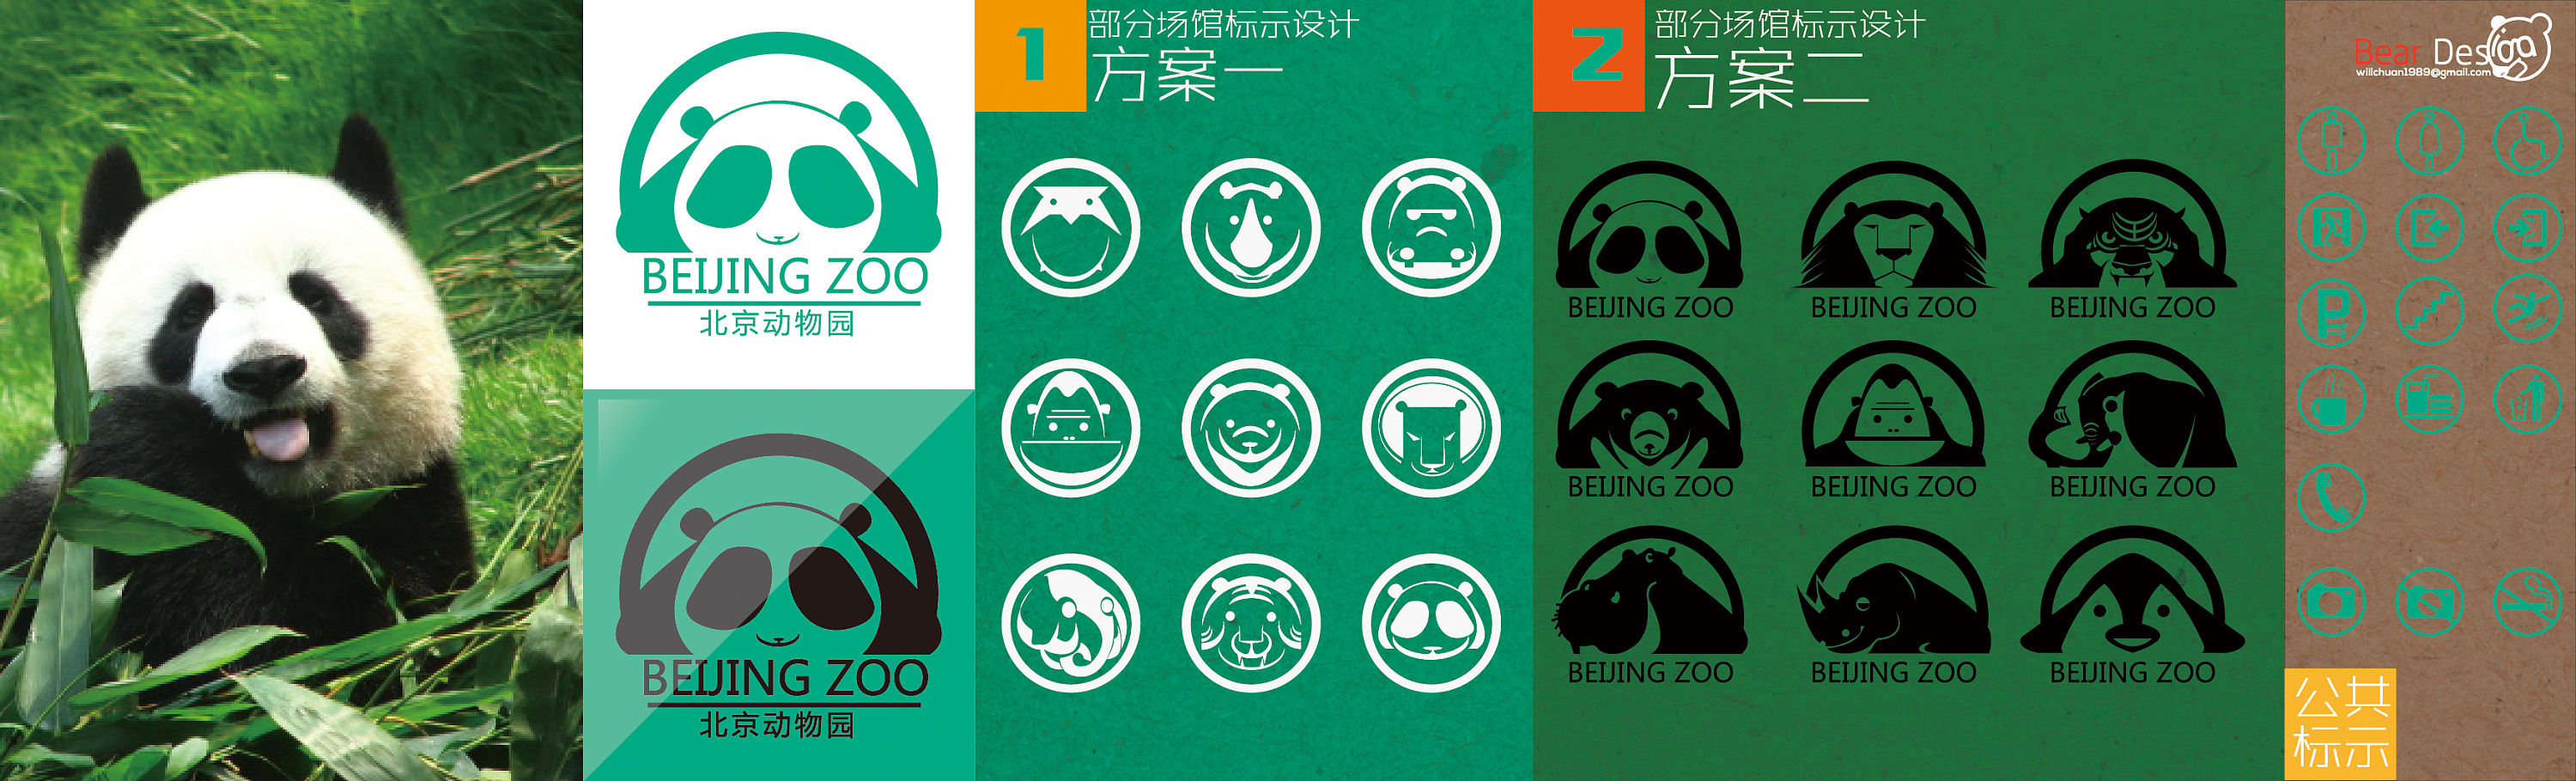 北京动物园logo设计及标示,上学时的作业!